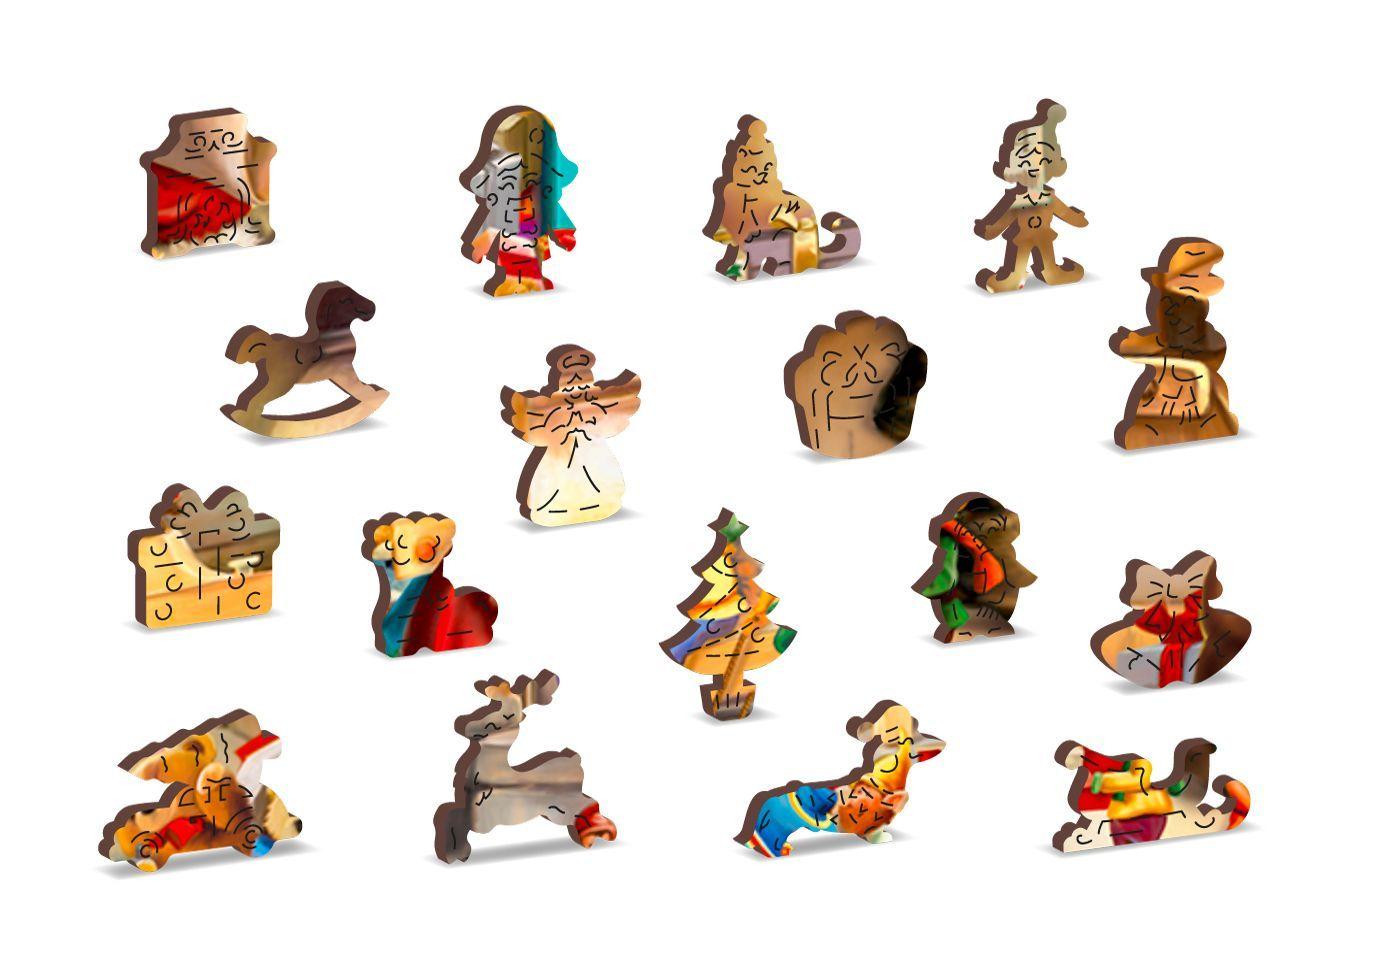 Drewniane Puzzle z figurkami - Warsztat Świętego Mikołaja, 1000 elementów